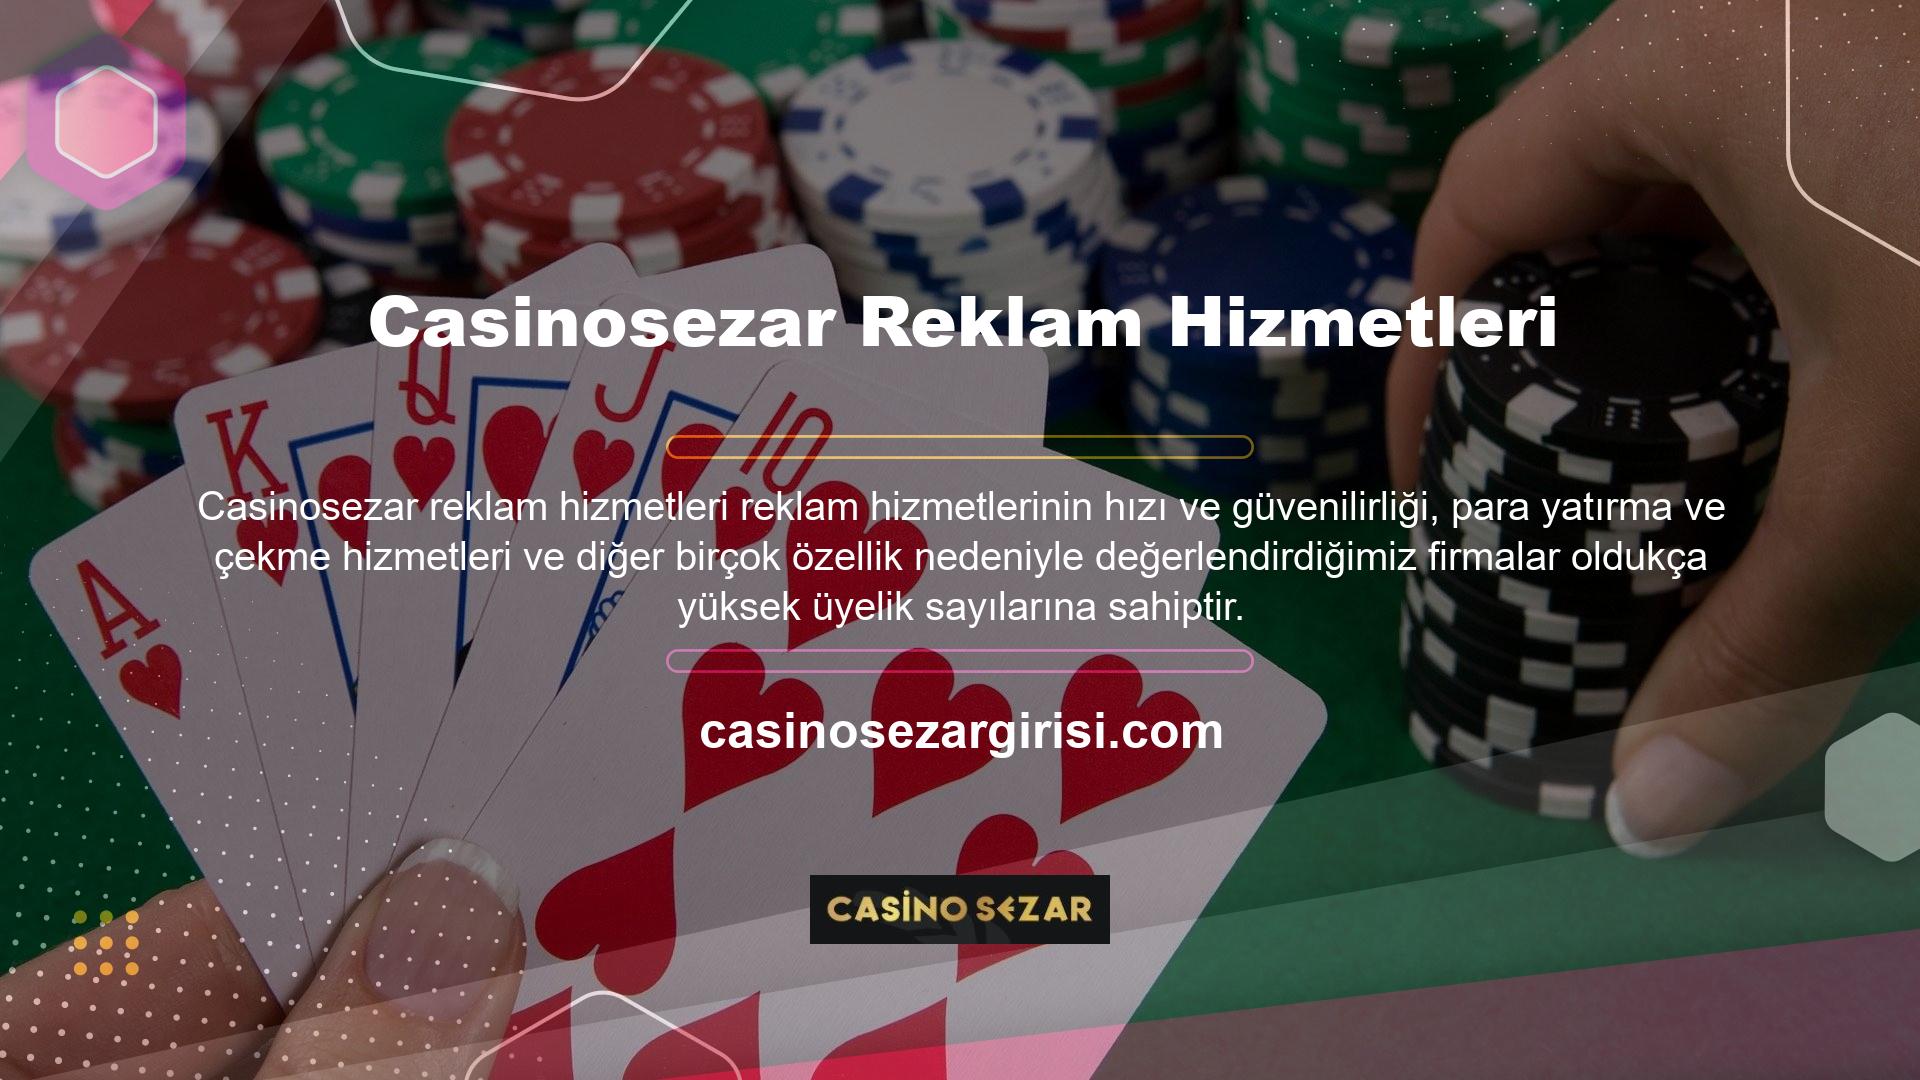 Casinosezar online oyun ve bahis platformunun tüm bahis içeriklerinde ve oyun alanlarında özel hazırlanmış güvenlik malzemeleri de sağlanmaktadır